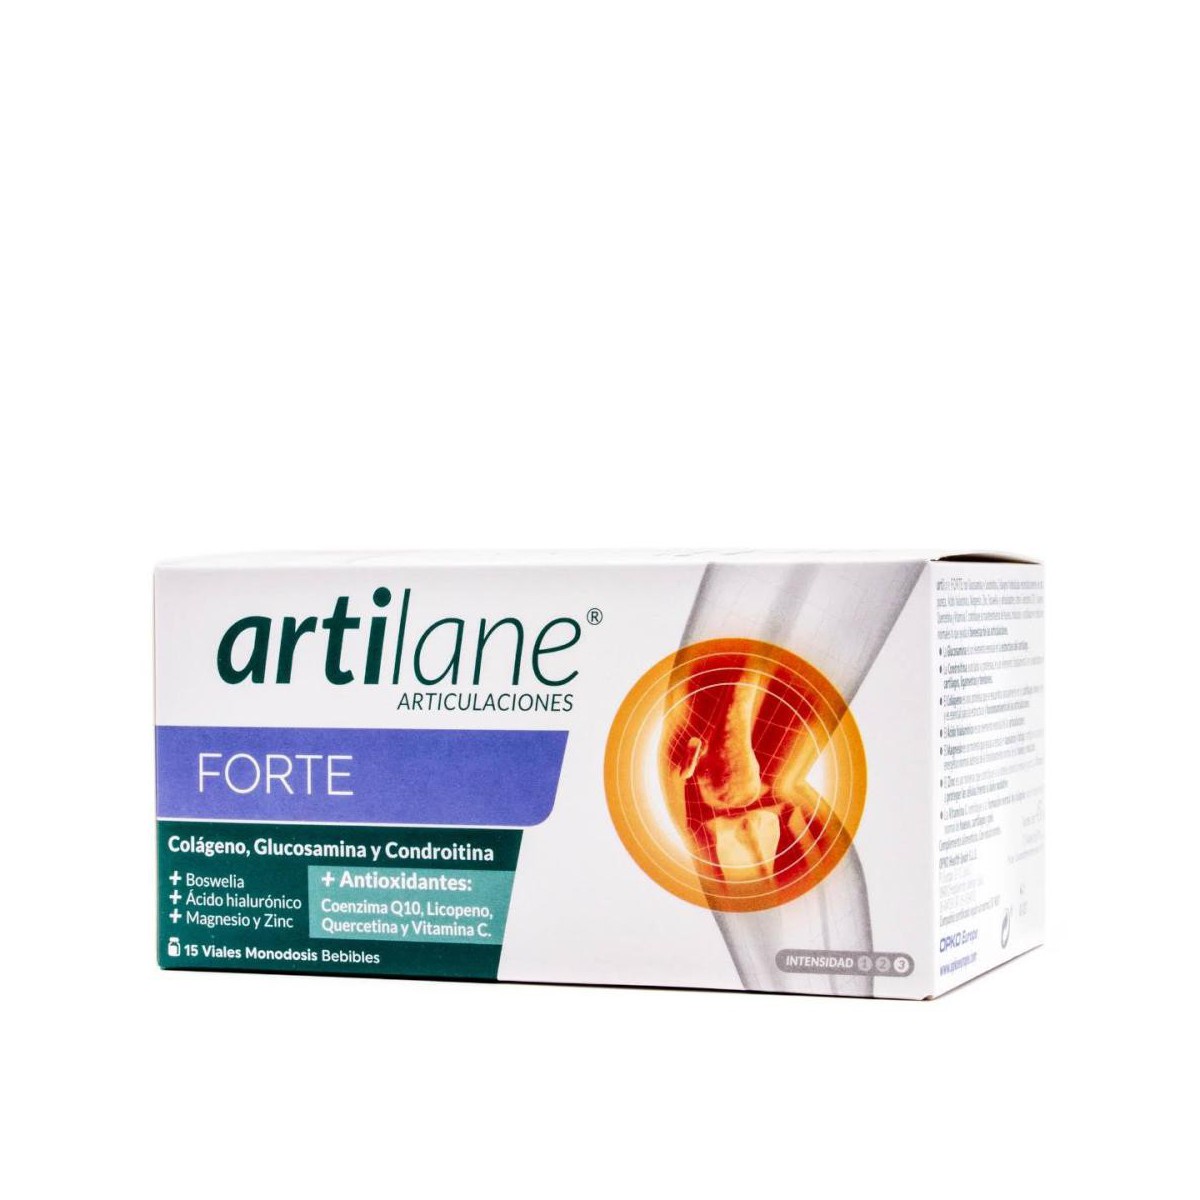 Artilane Forte 15 viales